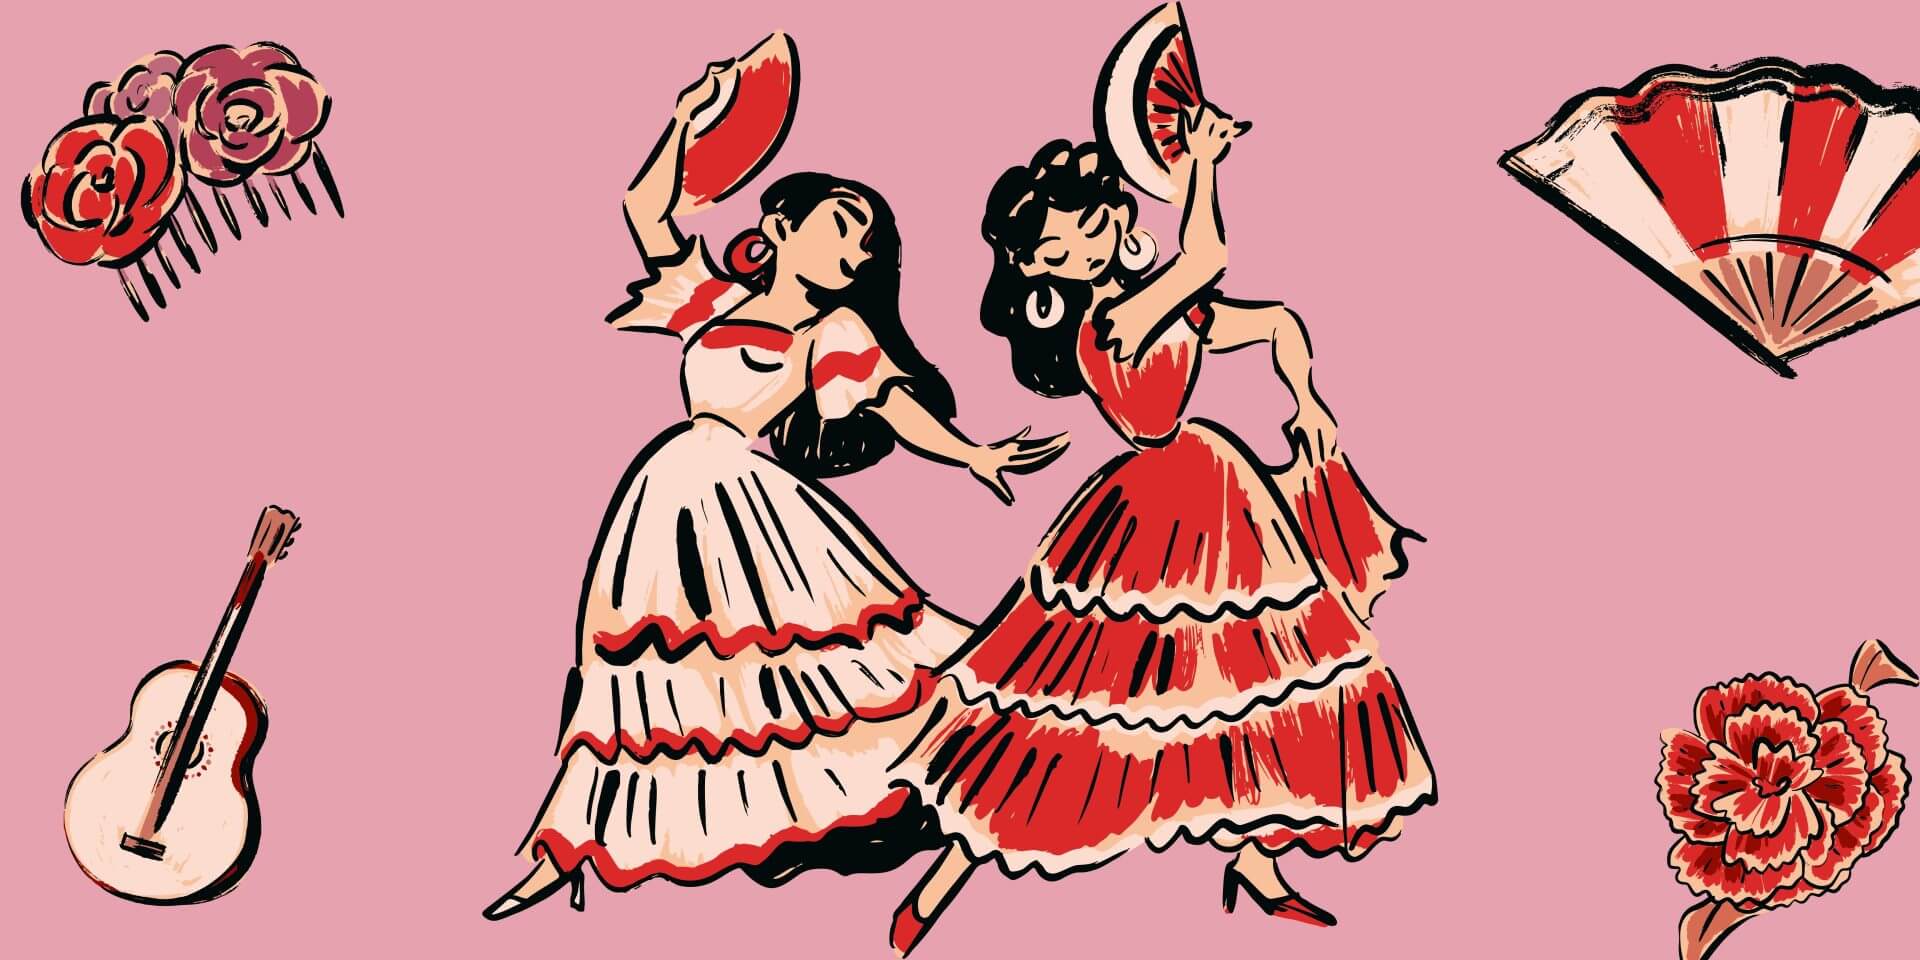 Instituto Hispánico de Murcia - Światowy Dzień Flamenco: Celebrując dźwięczną pasję